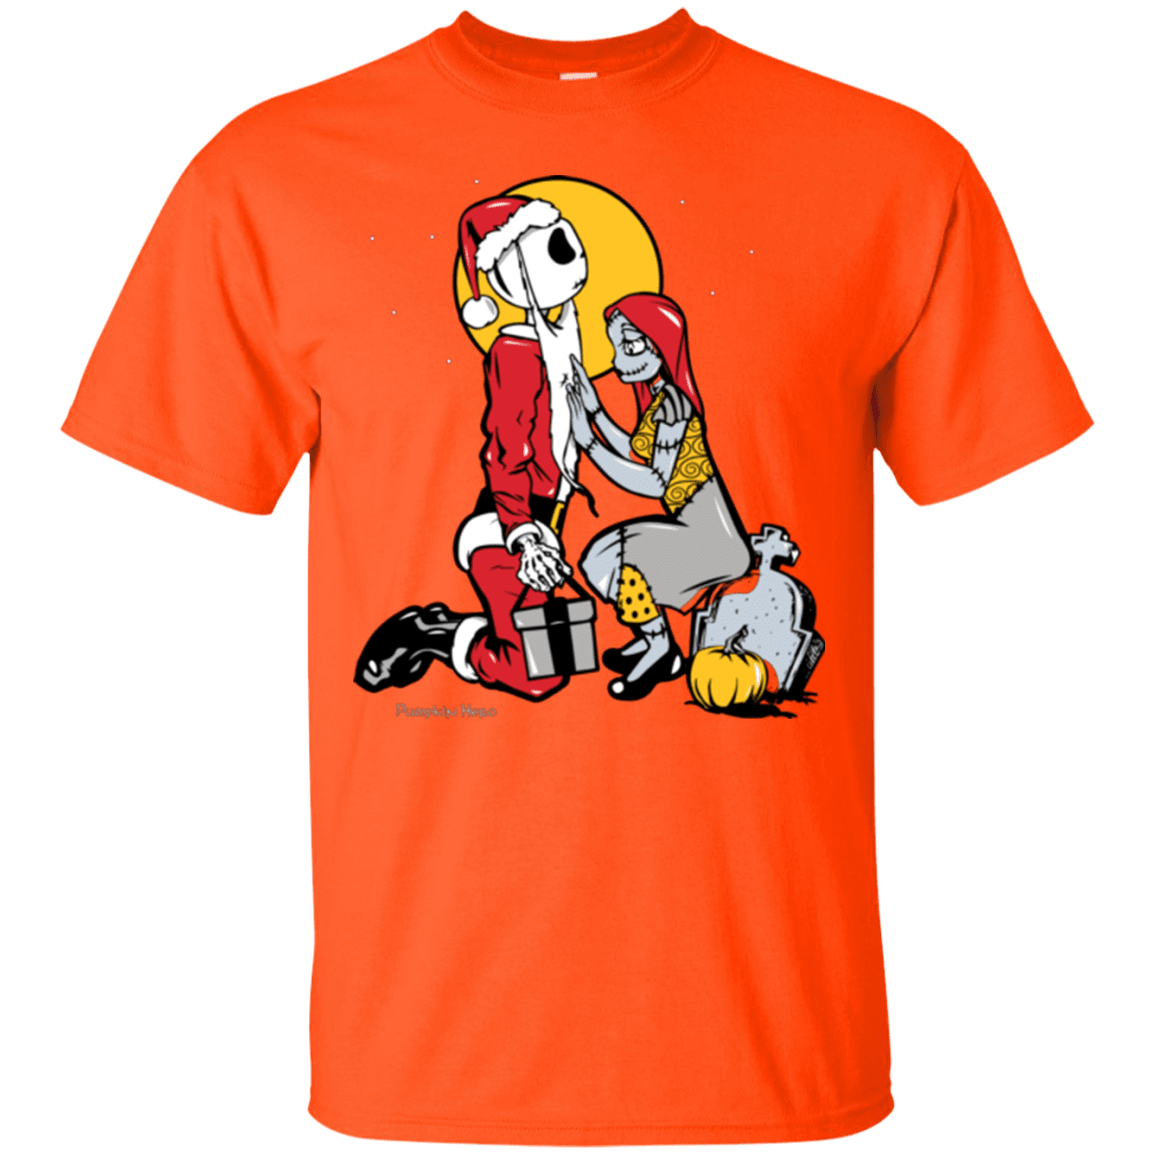 T-Shirts Orange / Small Pumpkin King T-Shirt